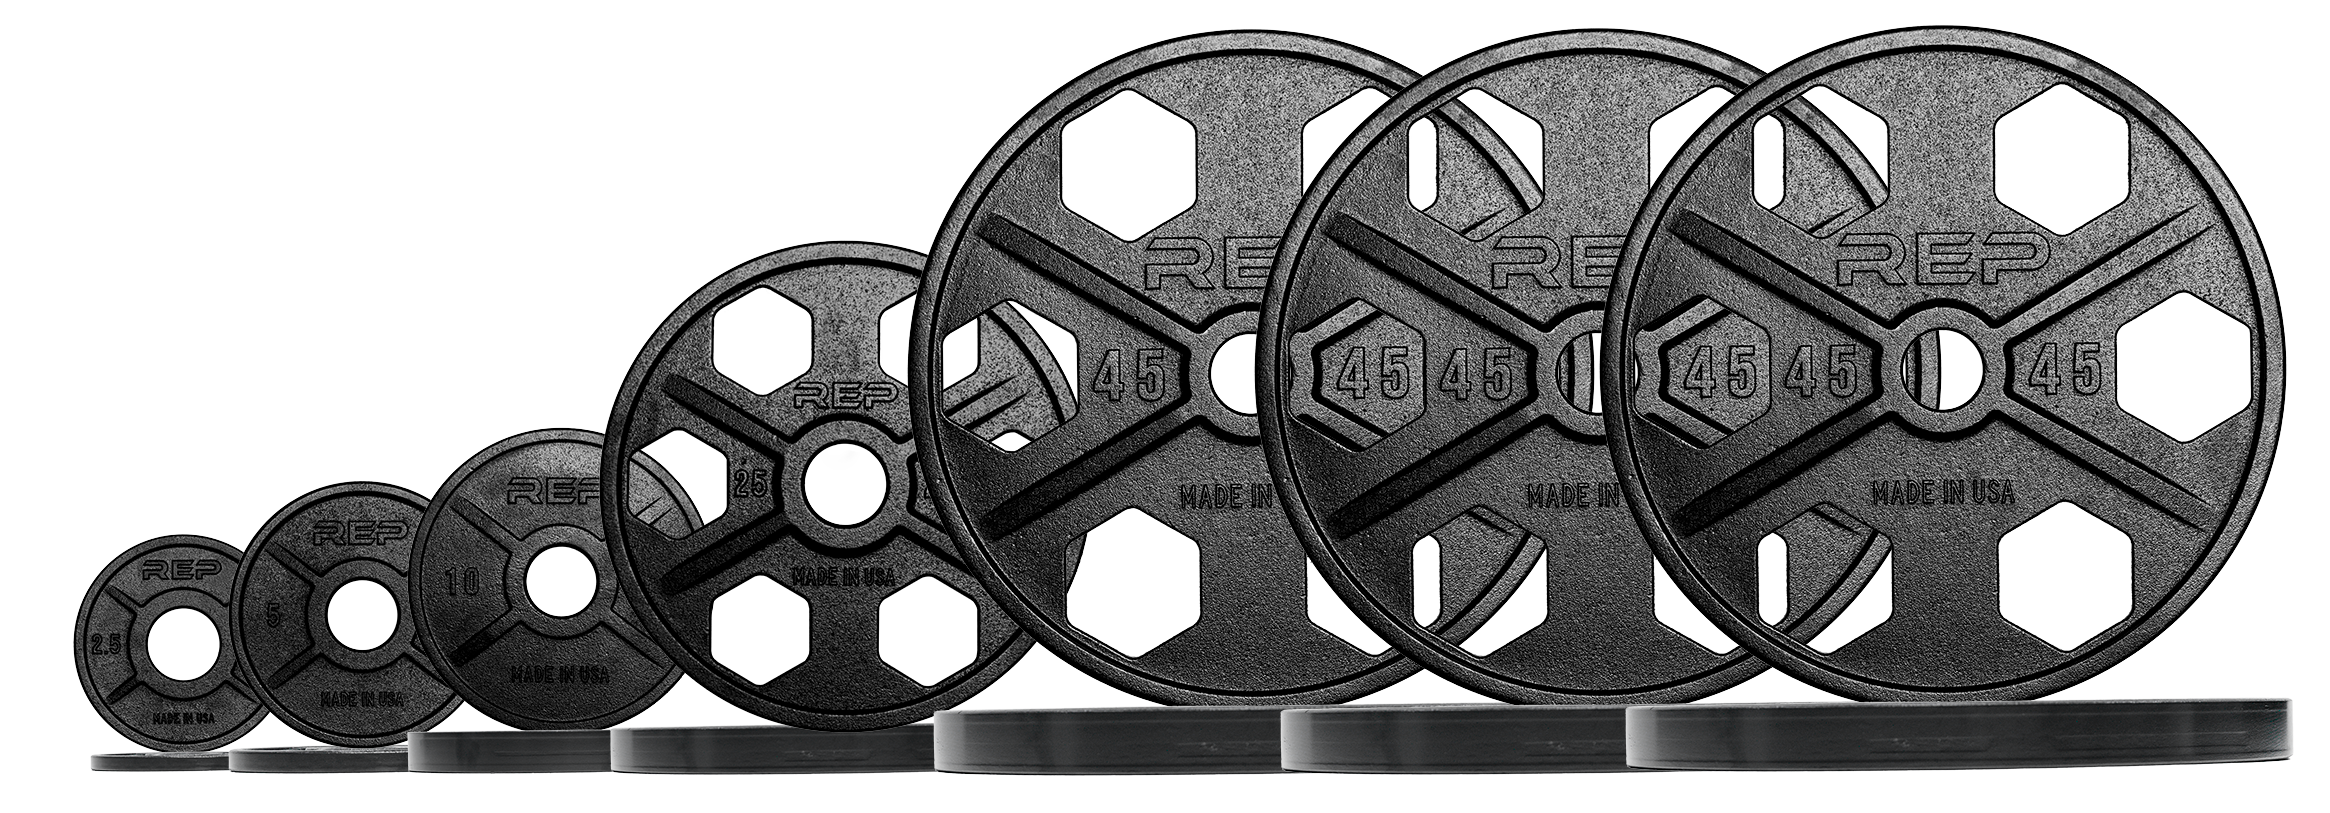 Equalizer™ - Iron Plates USA-Made - 355lb Set